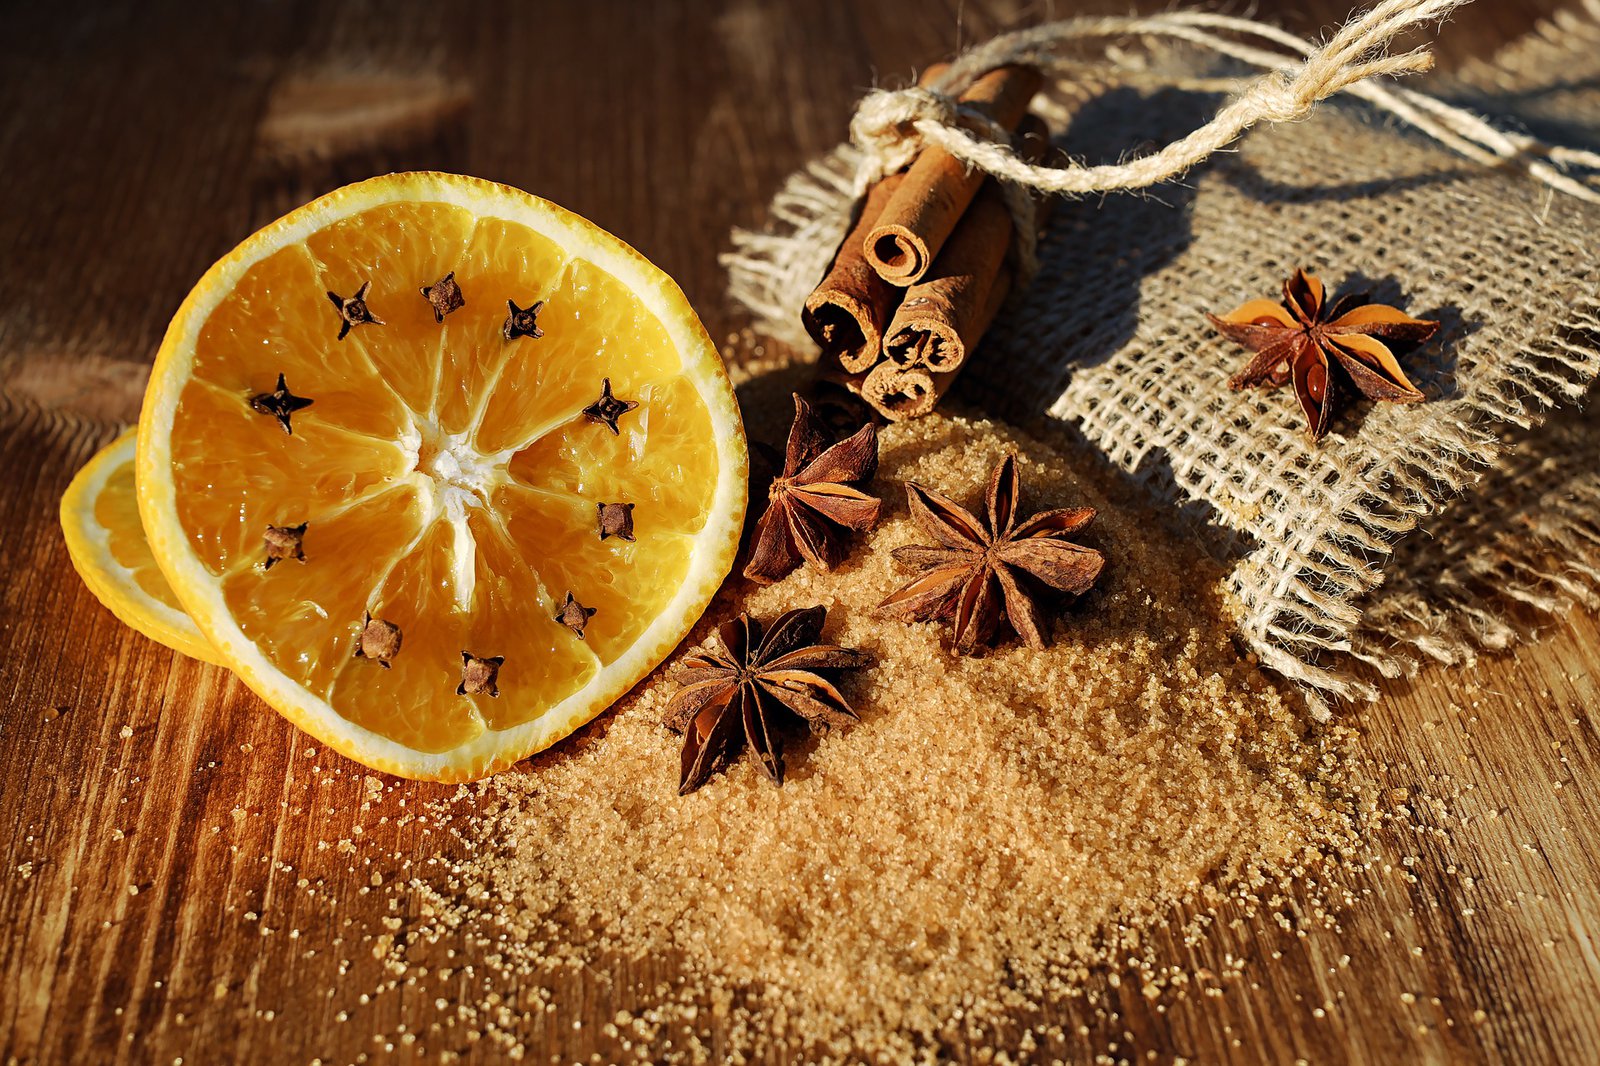 Ein Bund Zimtstangen, eine Orangenscheibe und Nelken umgeben einen Haufen braunen Zucker.